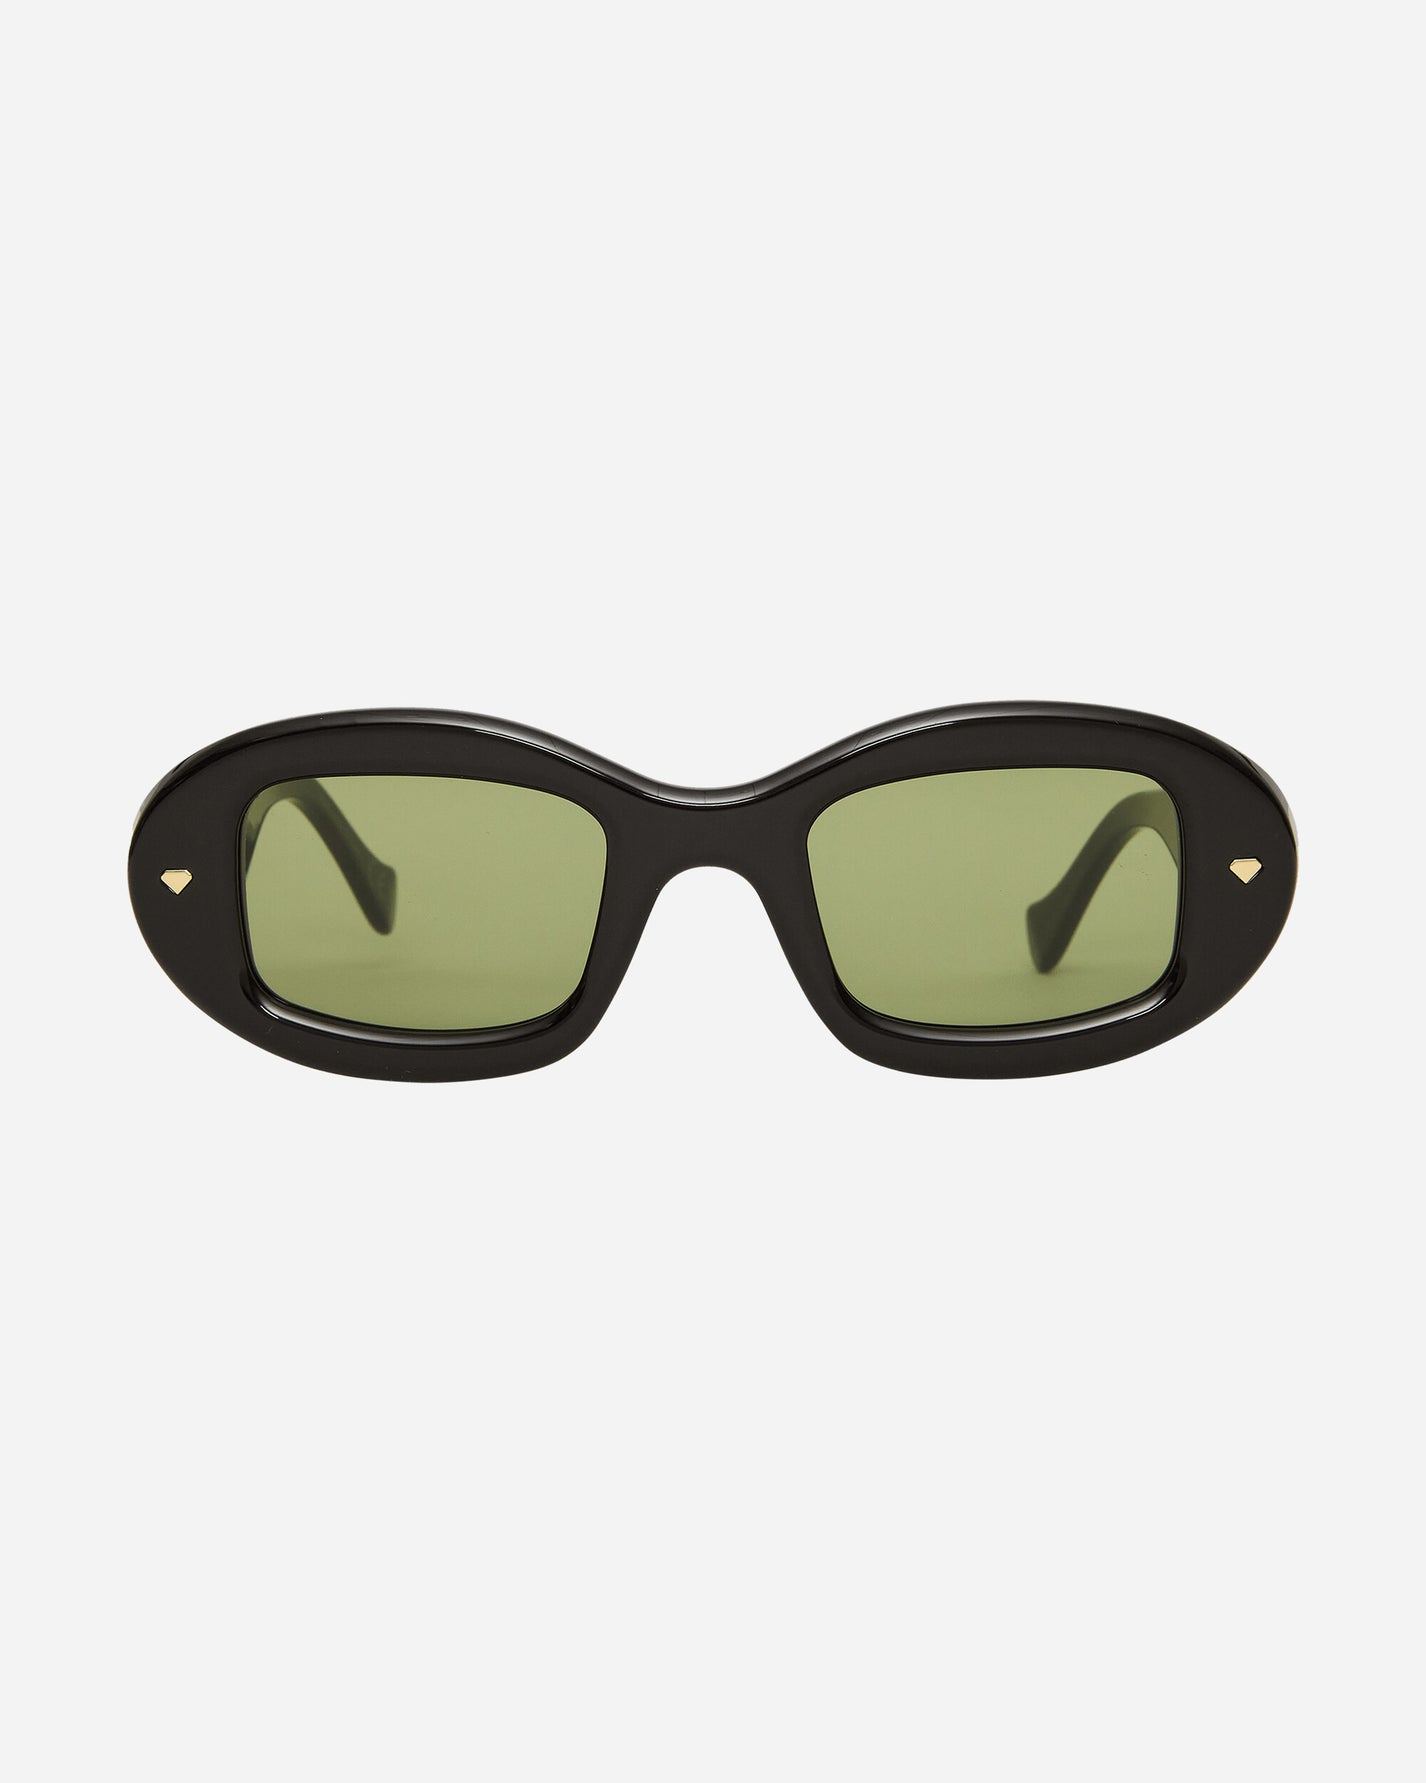 Iuter Iuter X Resrosuperfuture Tutto Black Eyewear Sunglasses IUTERSUPER BLACK